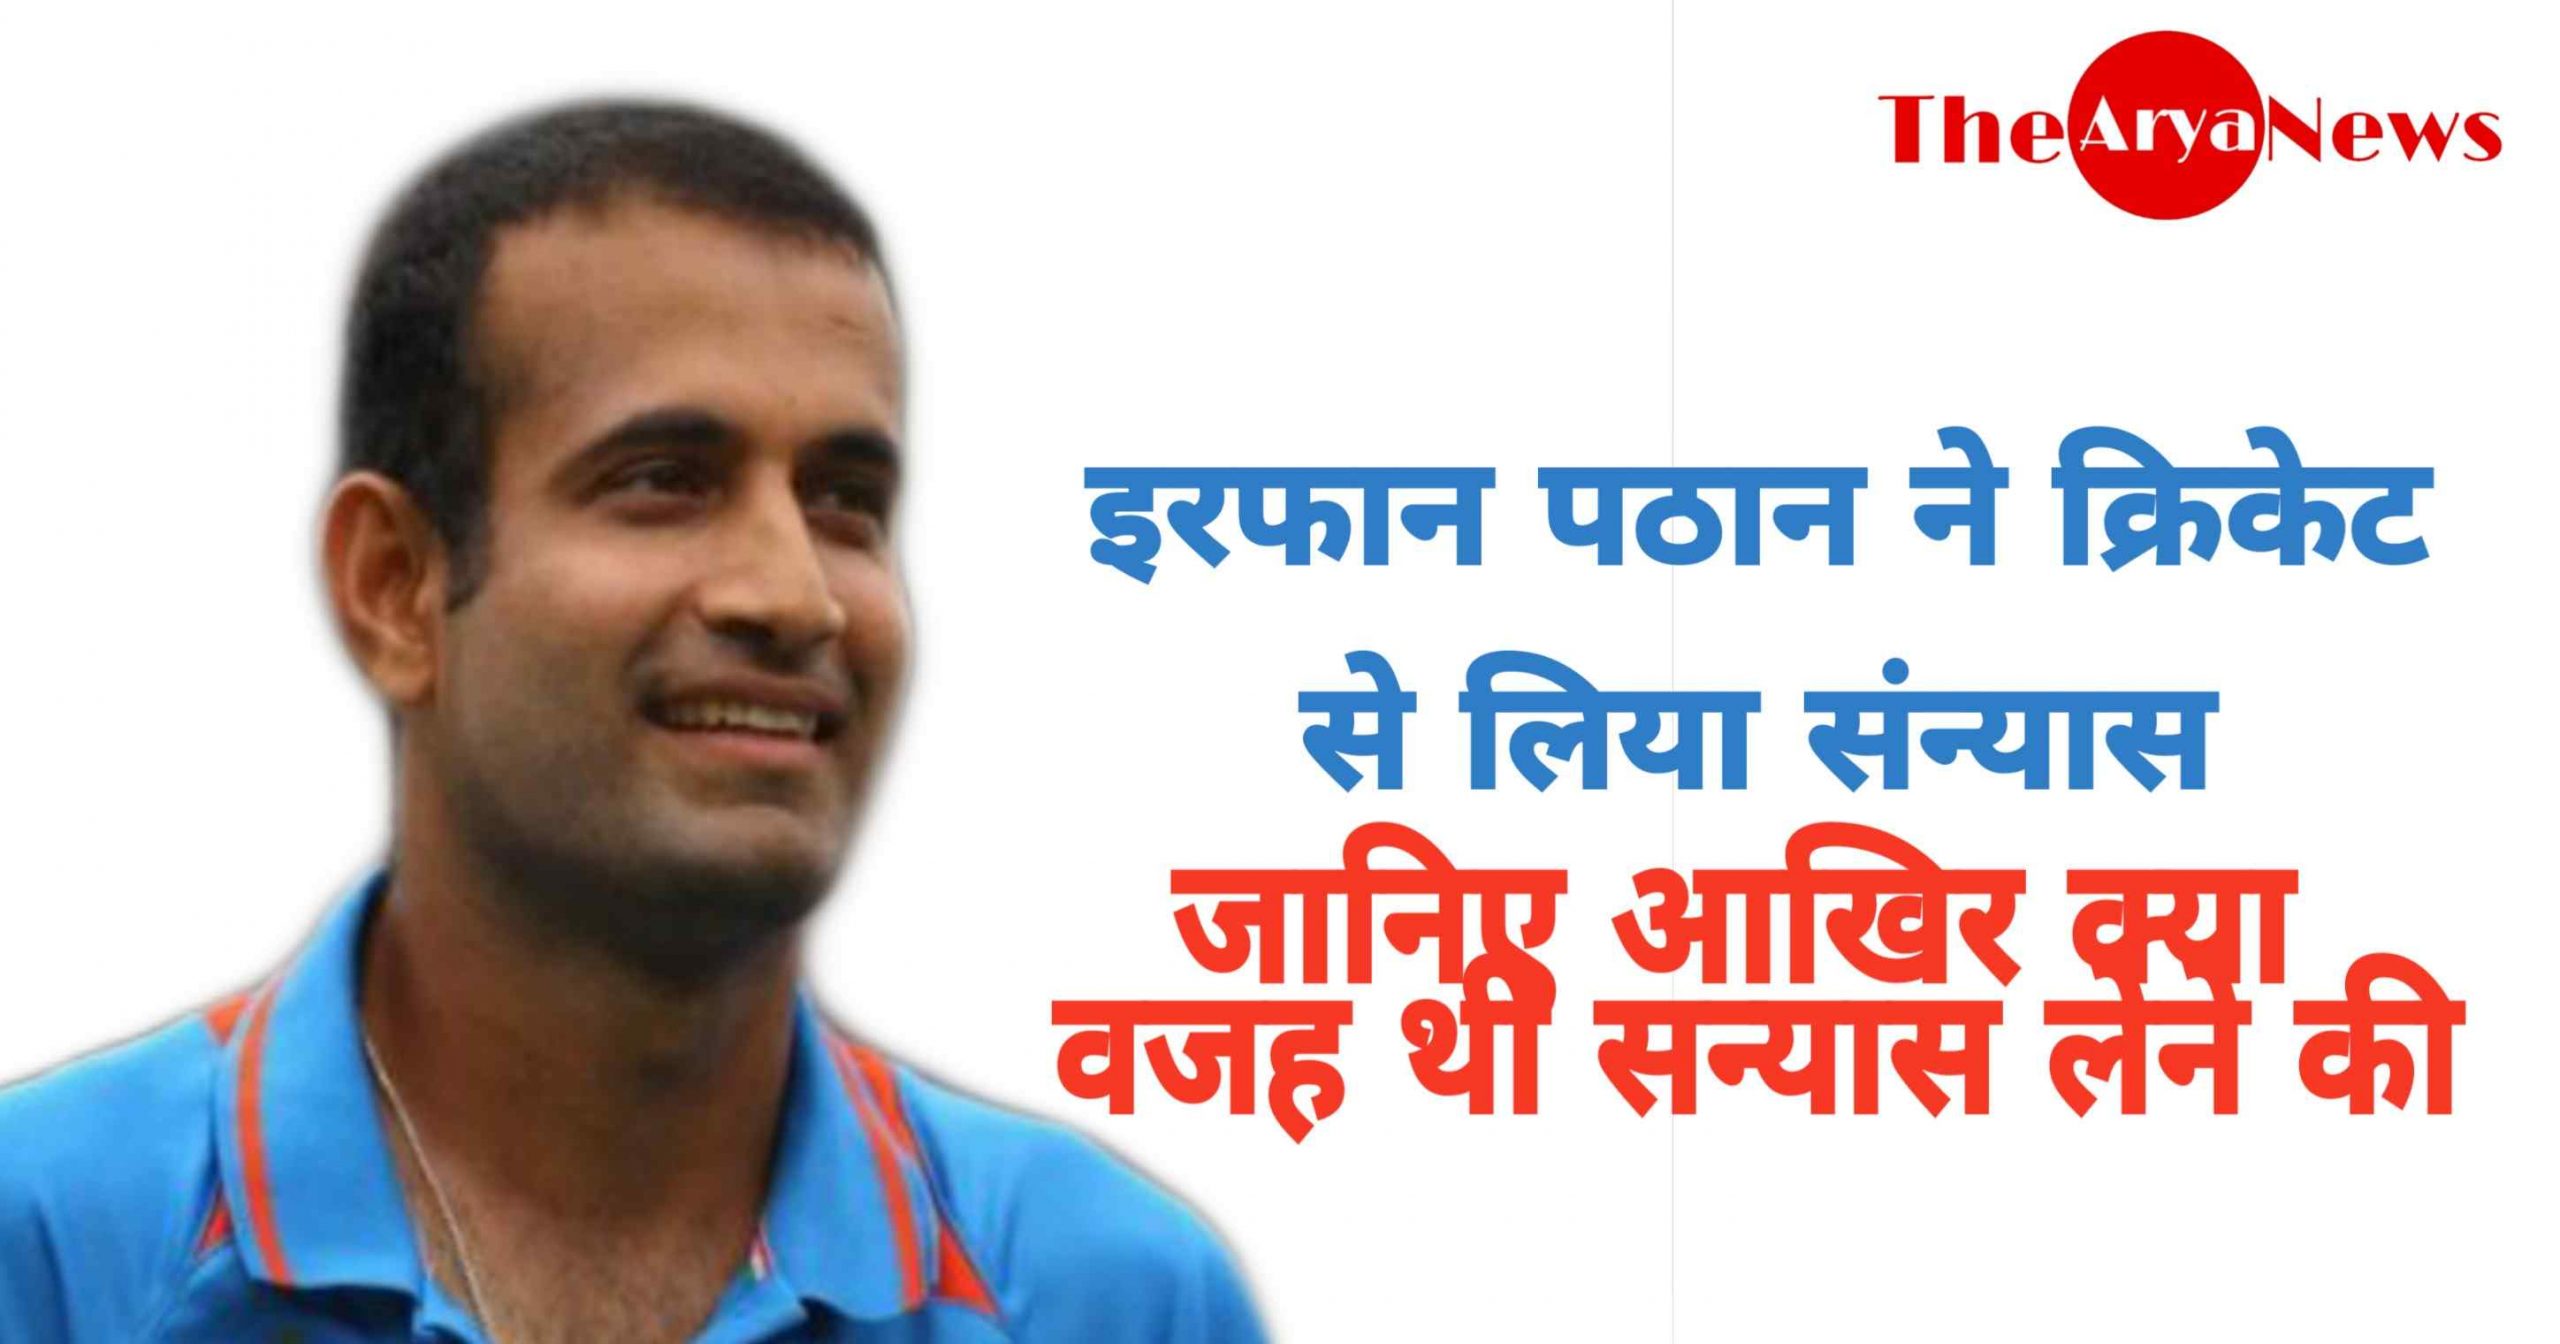 Irfan Pathan retired from cricket | जानिए आखिर क्या वजह थी संन्यास लेने की [HINDI]